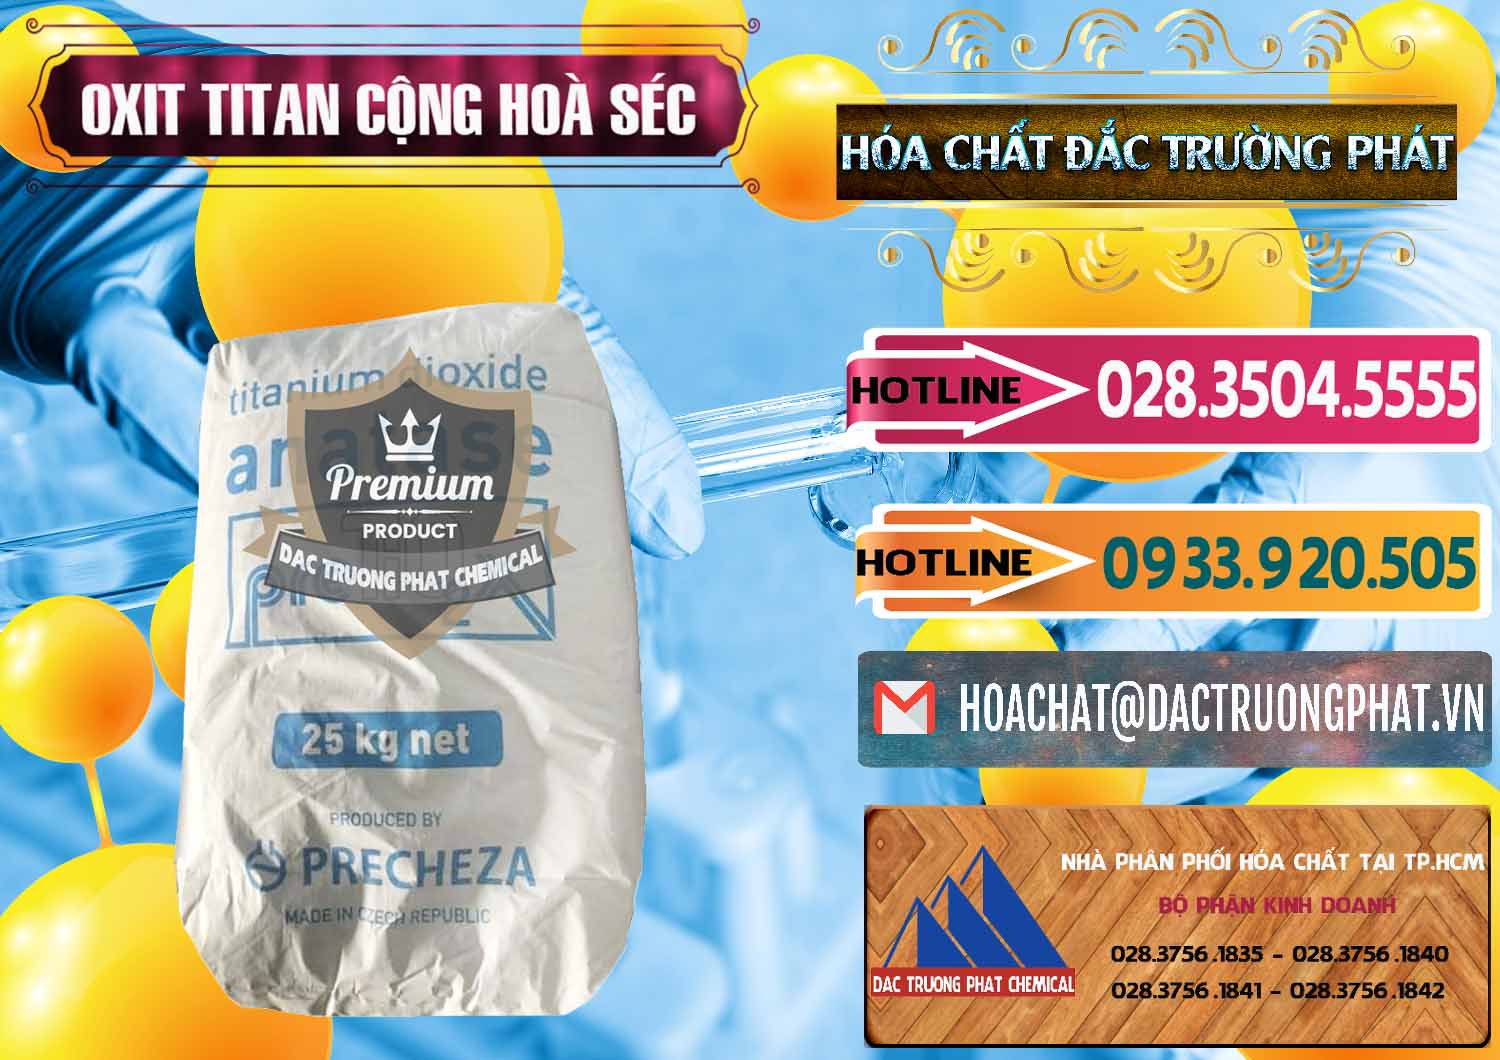 Công ty chuyên phân phối & bán Oxit Titan KA100 – Tio2 Cộng Hòa Séc Czech Republic - 0407 - Cty phân phối và cung ứng hóa chất tại TP.HCM - dactruongphat.vn